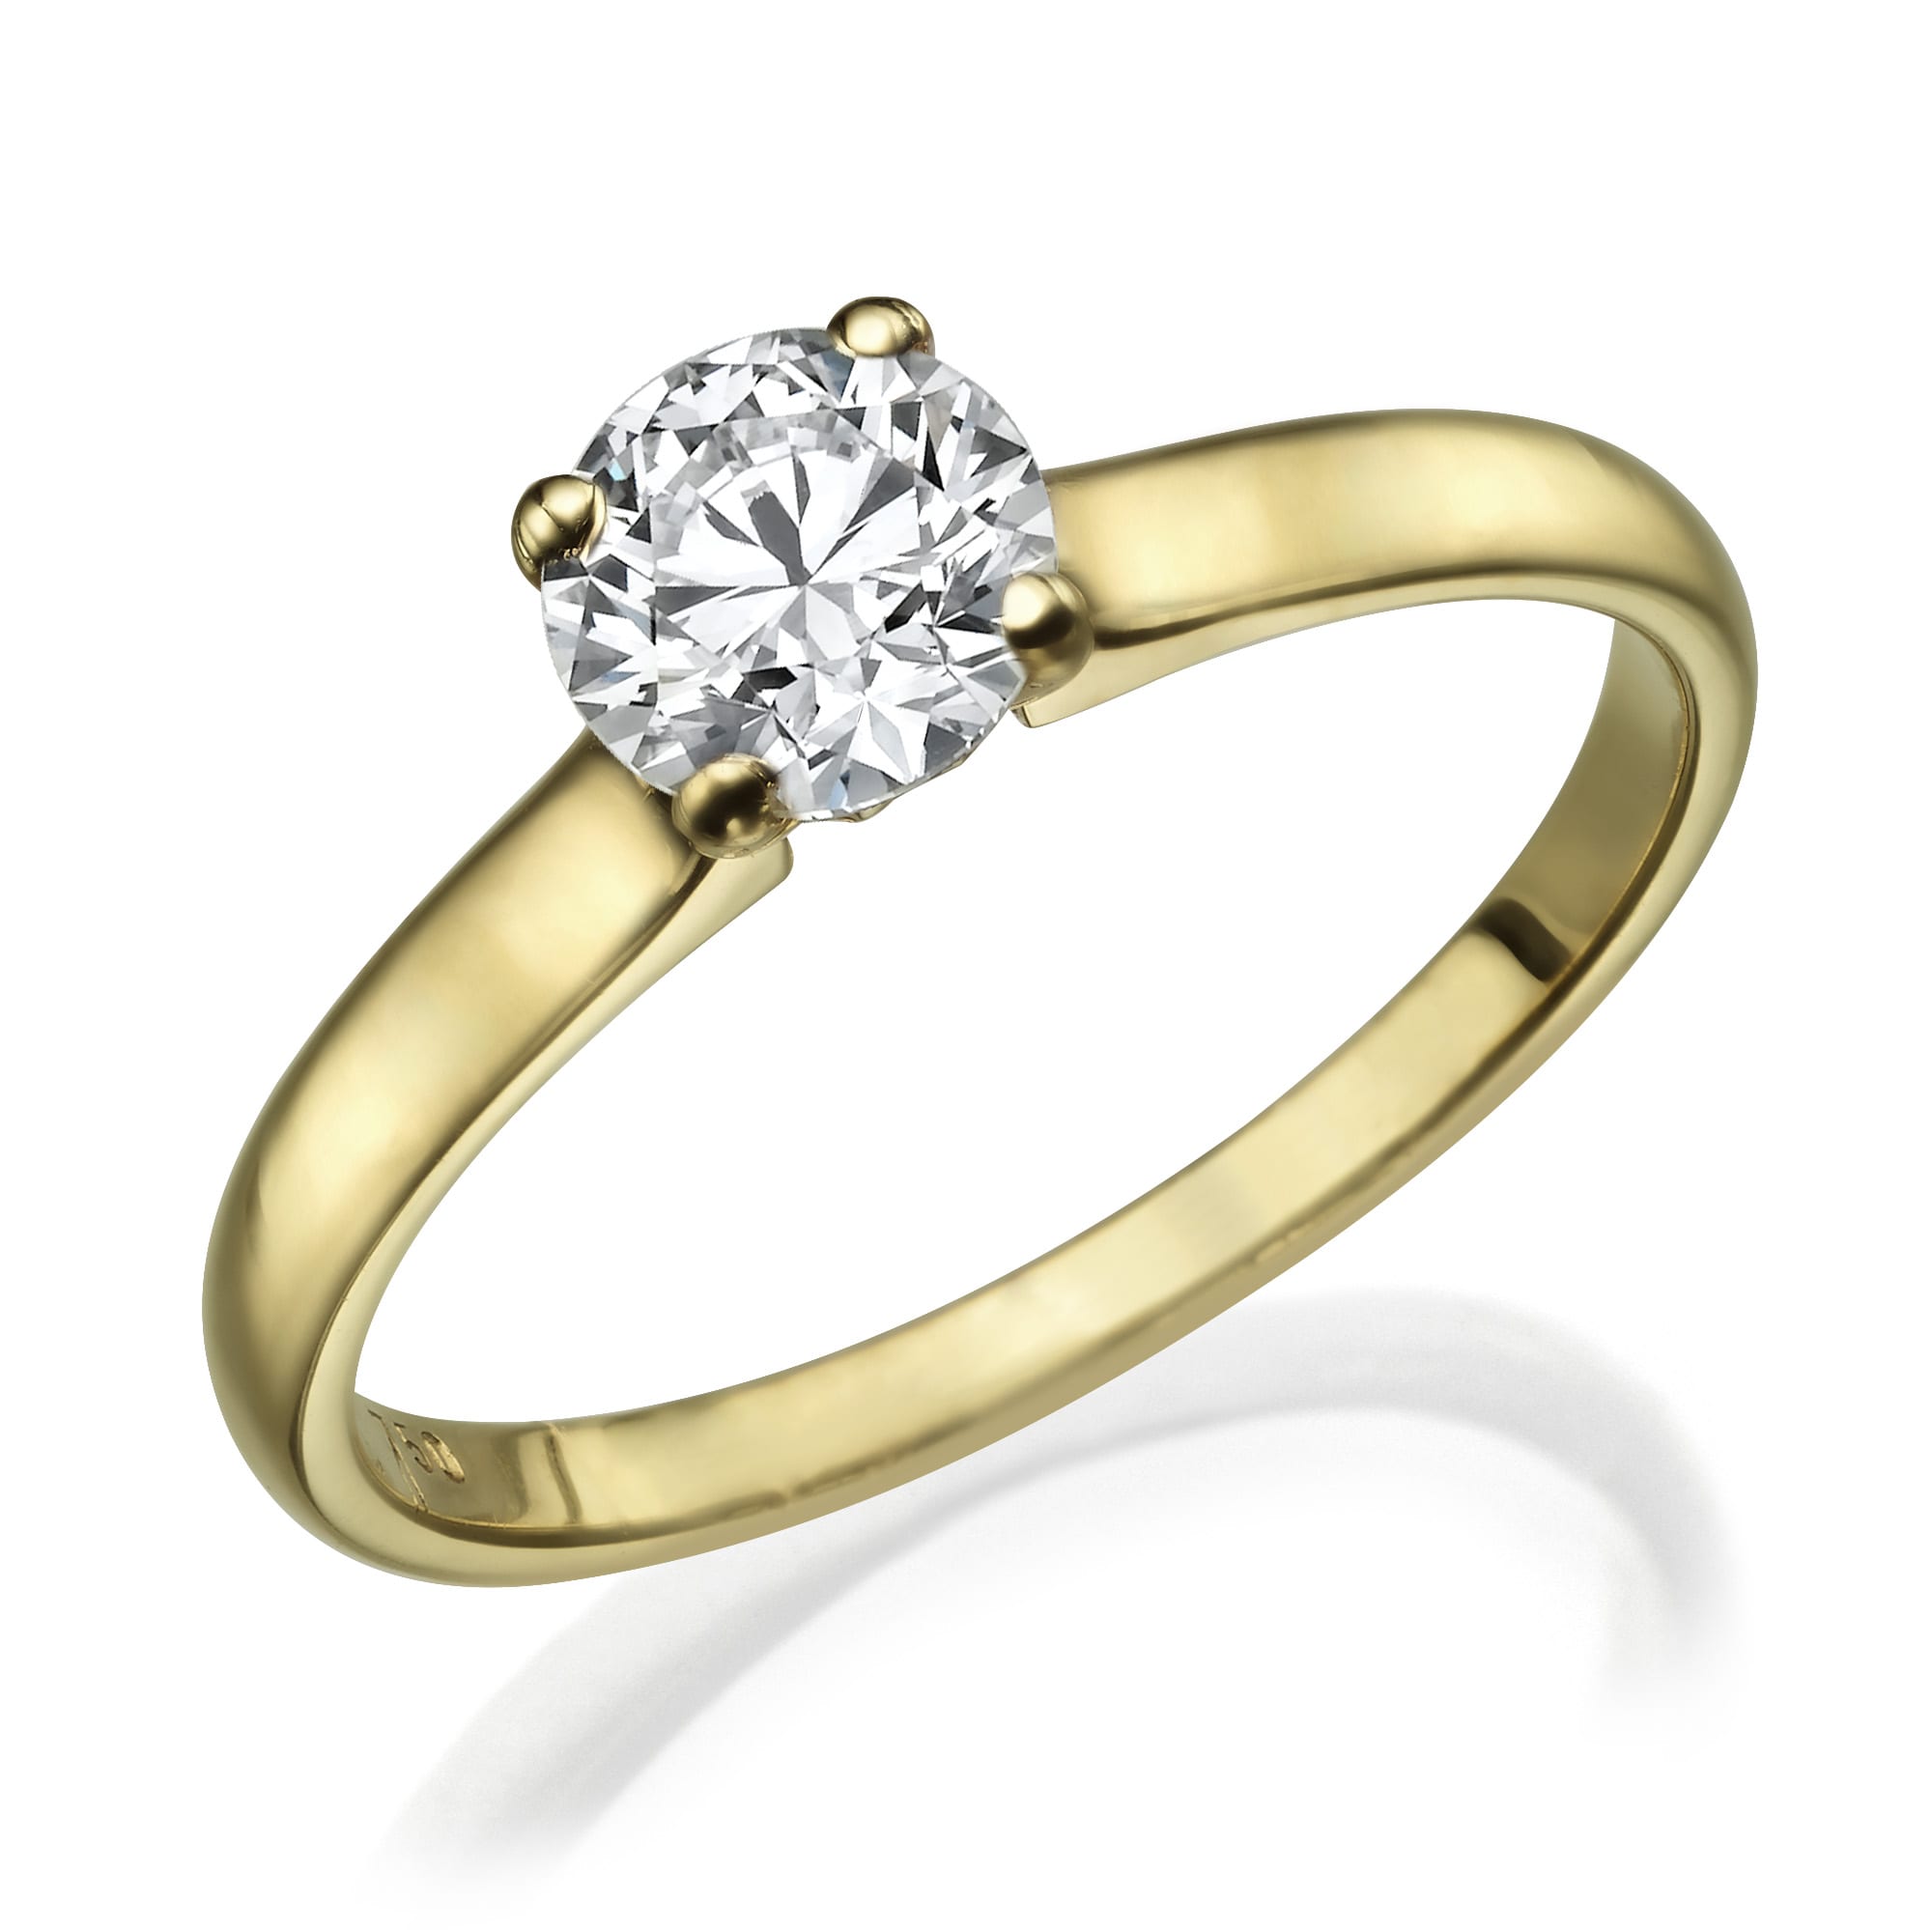 טבעת אירוסין קלאסית מזהב הכוללת יהלום אחד גדול בחיתוך עגול משובץ בעיצוב פשוט ואלגנטי של טבעת דגם לאנה.